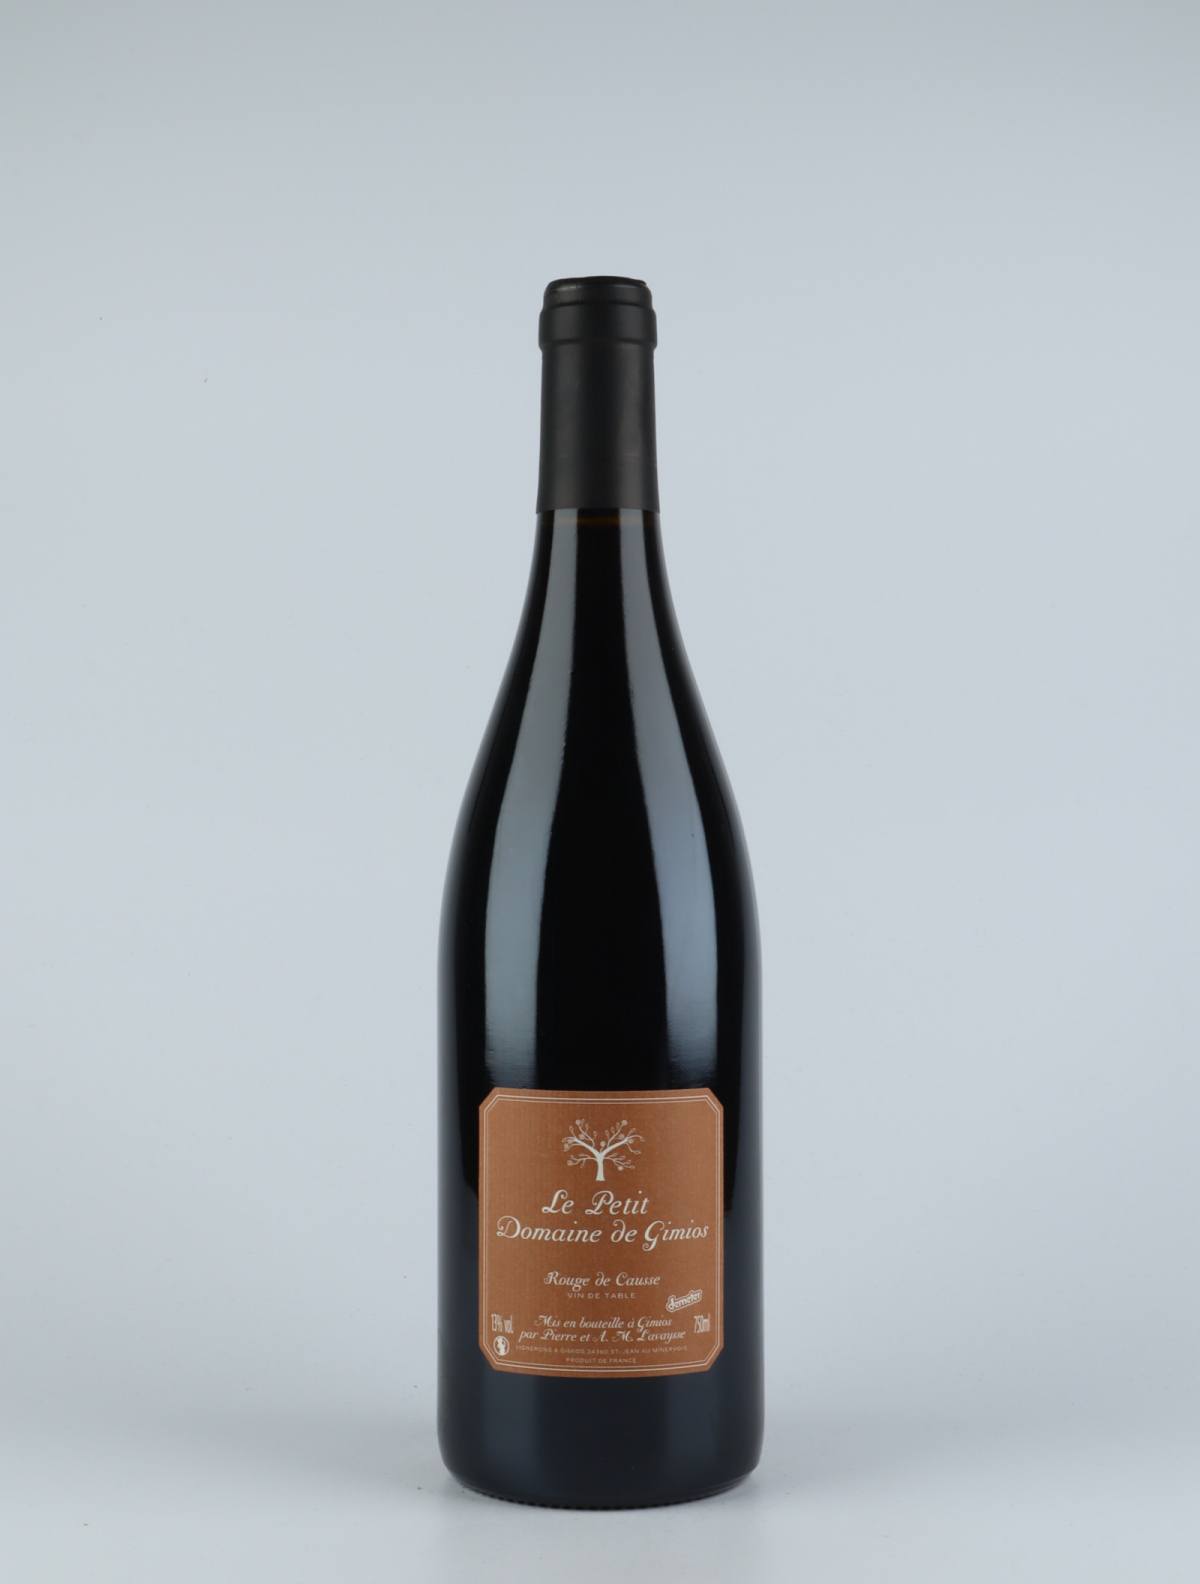 A bottle 2017 Rouge de Causse Red wine from Le Petit Domaine de Gimios, Rousillon in France